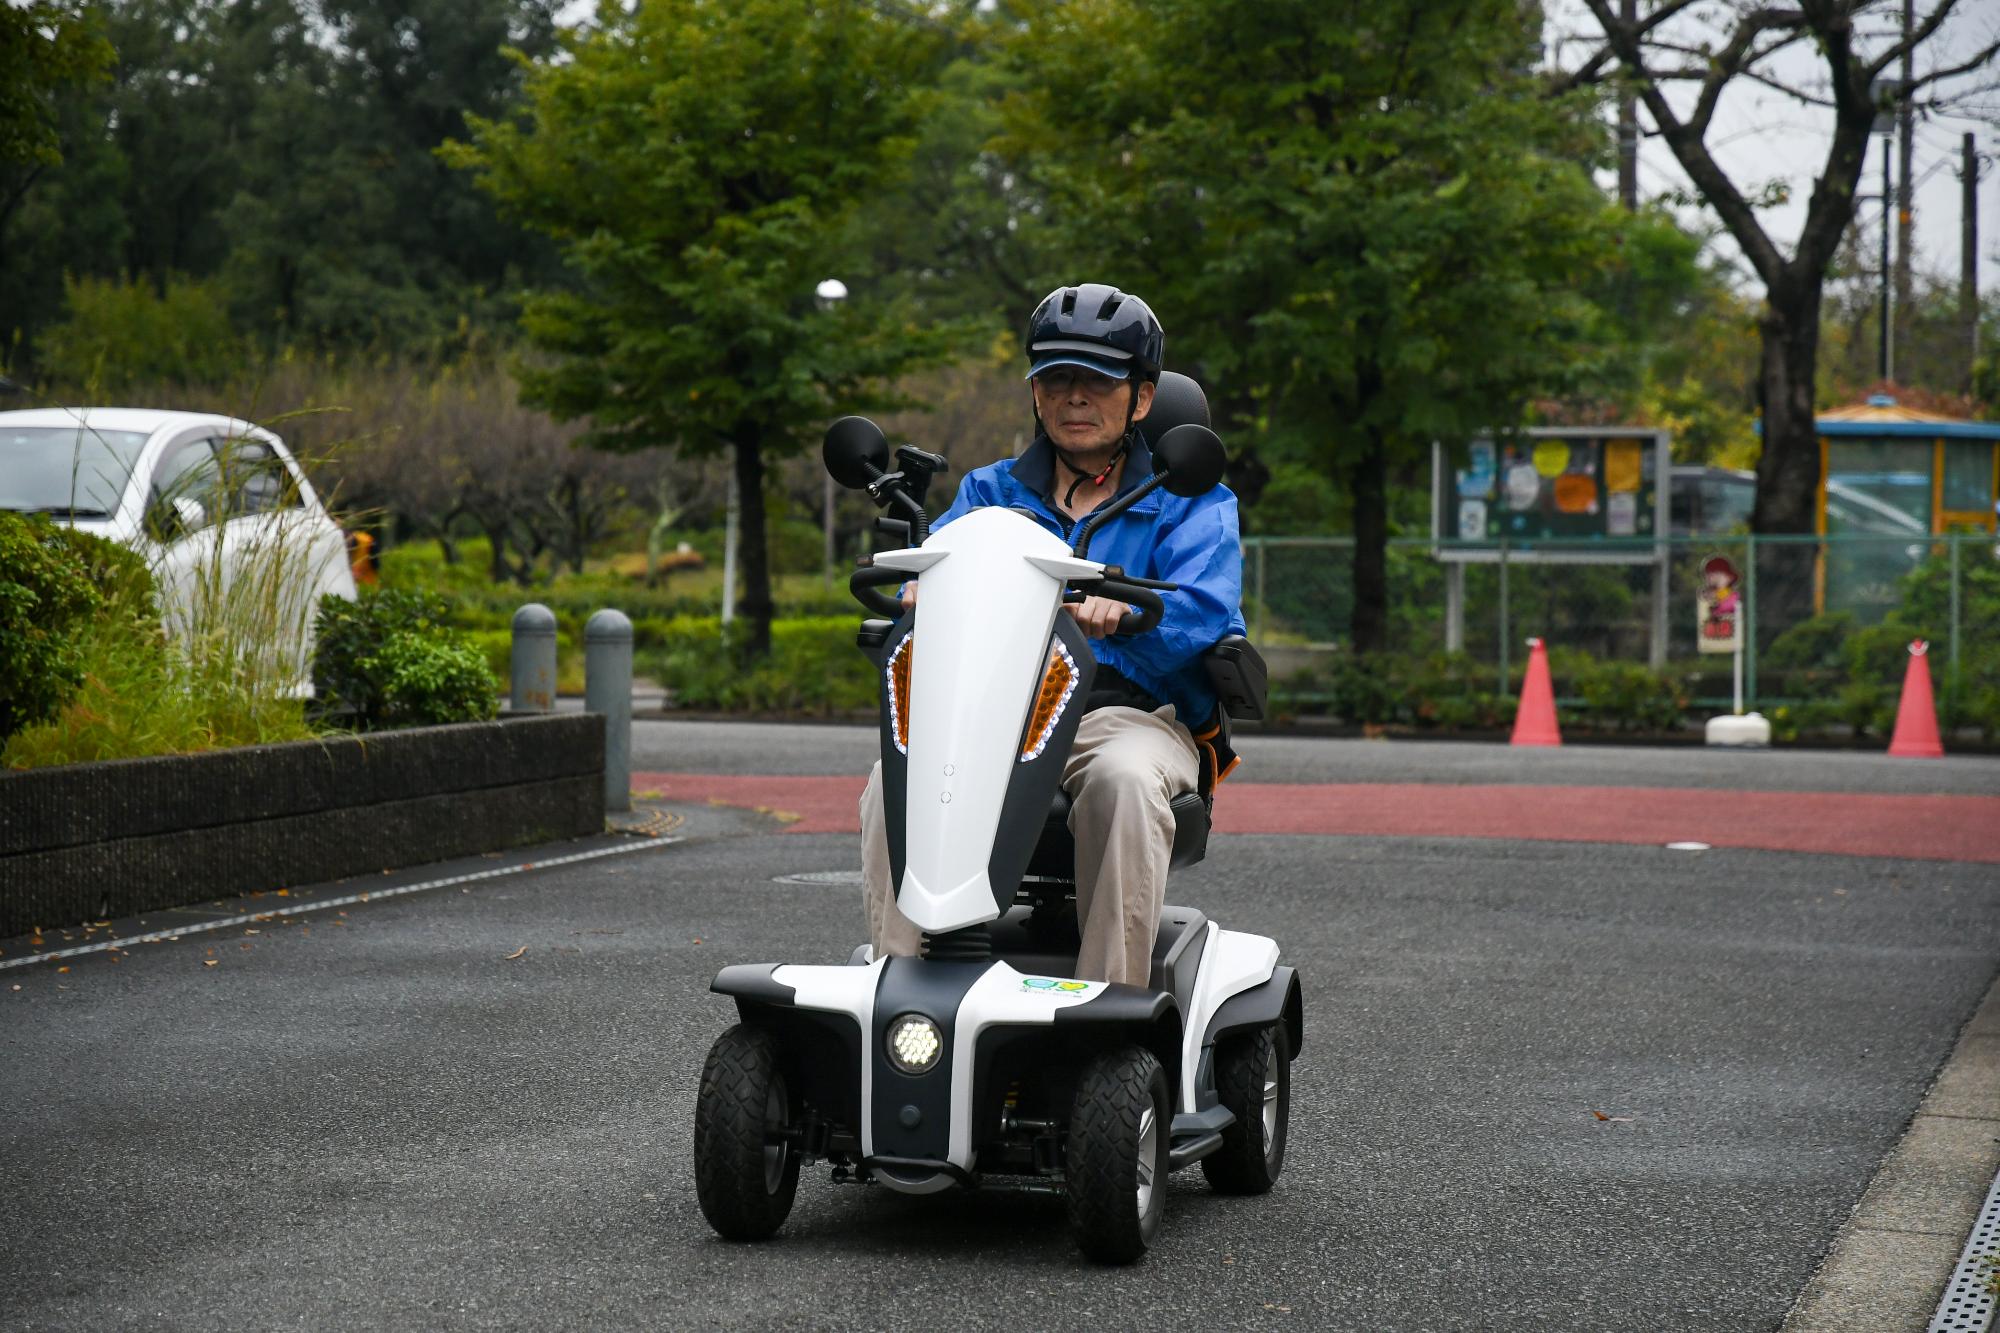 森の里公民館周辺道路で次世代モビリティスクーターを試乗している様子